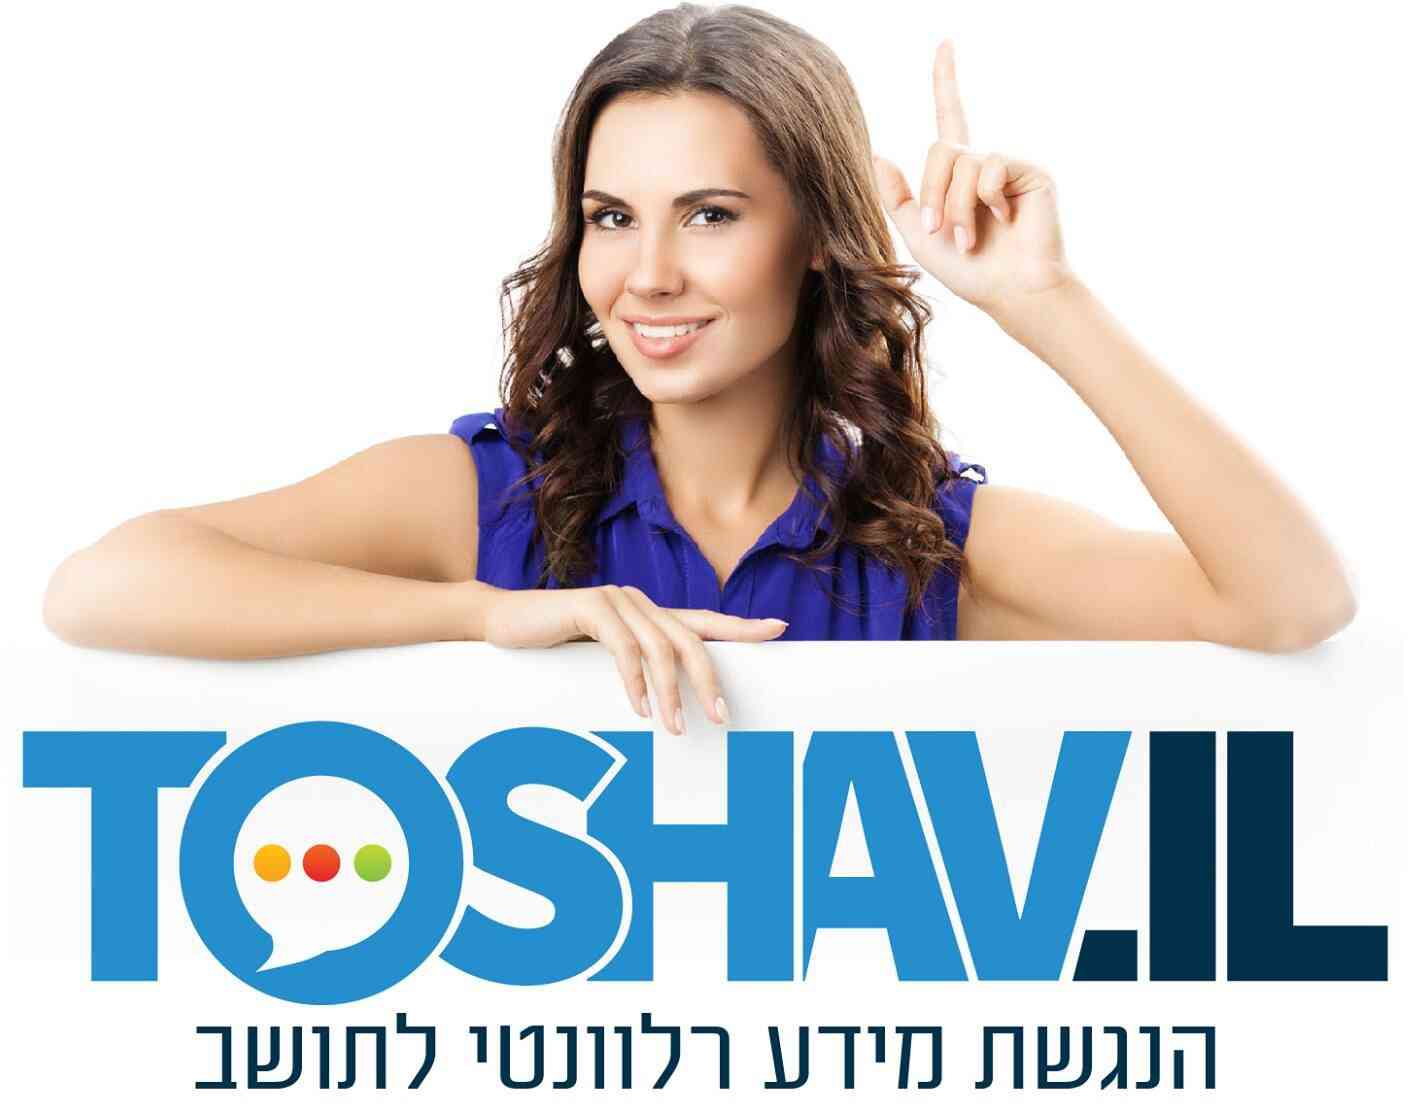 toshavil yehud